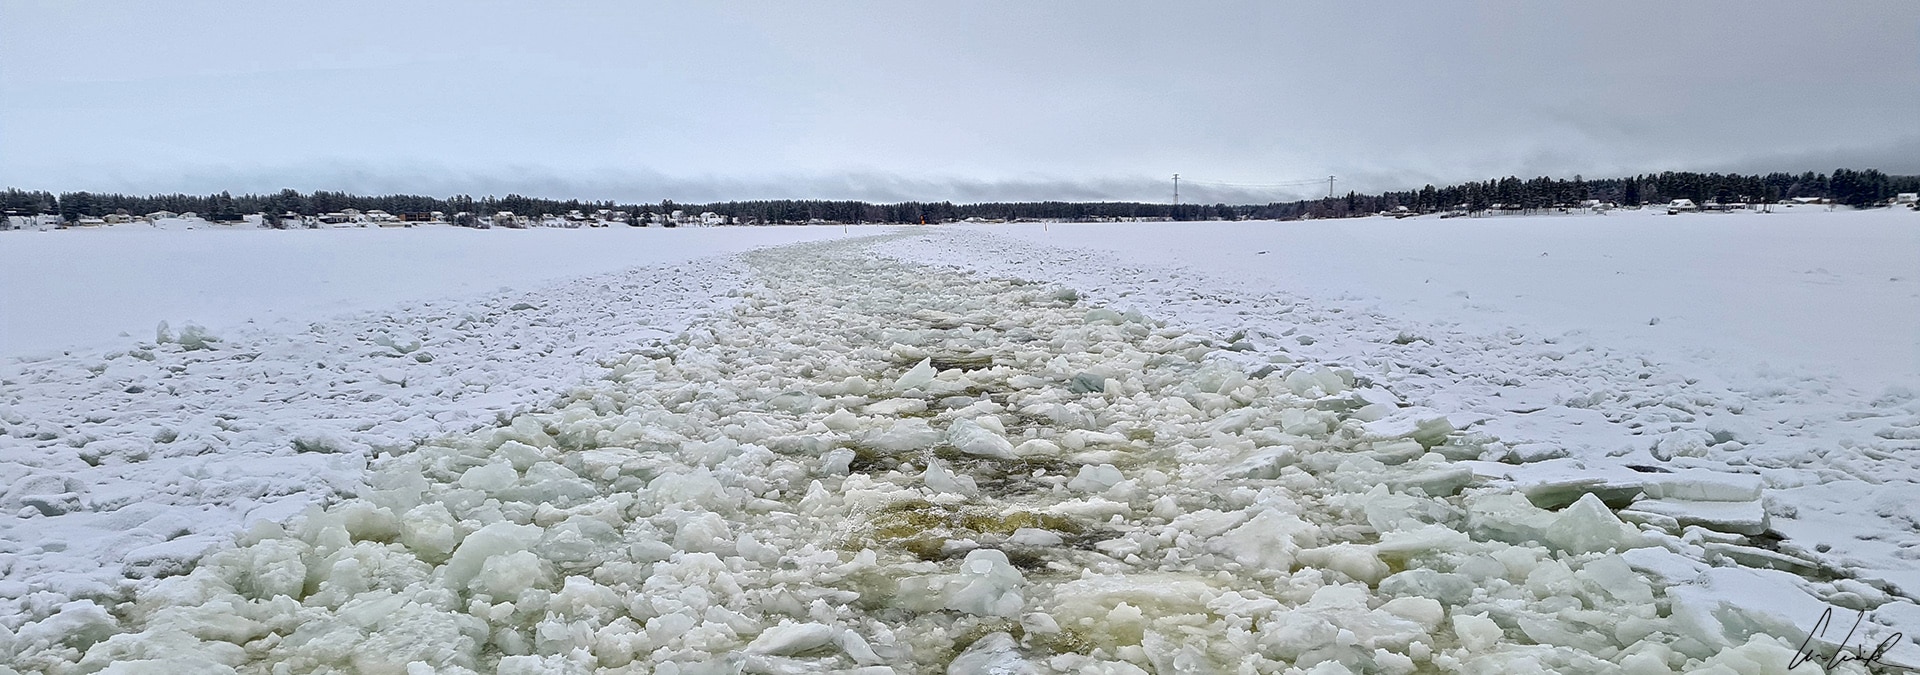 Depuis l’arrière du brise-glace, on distingue nettement la route tracée par le navire qui a écrasé et brisé la glace sous sa coque.